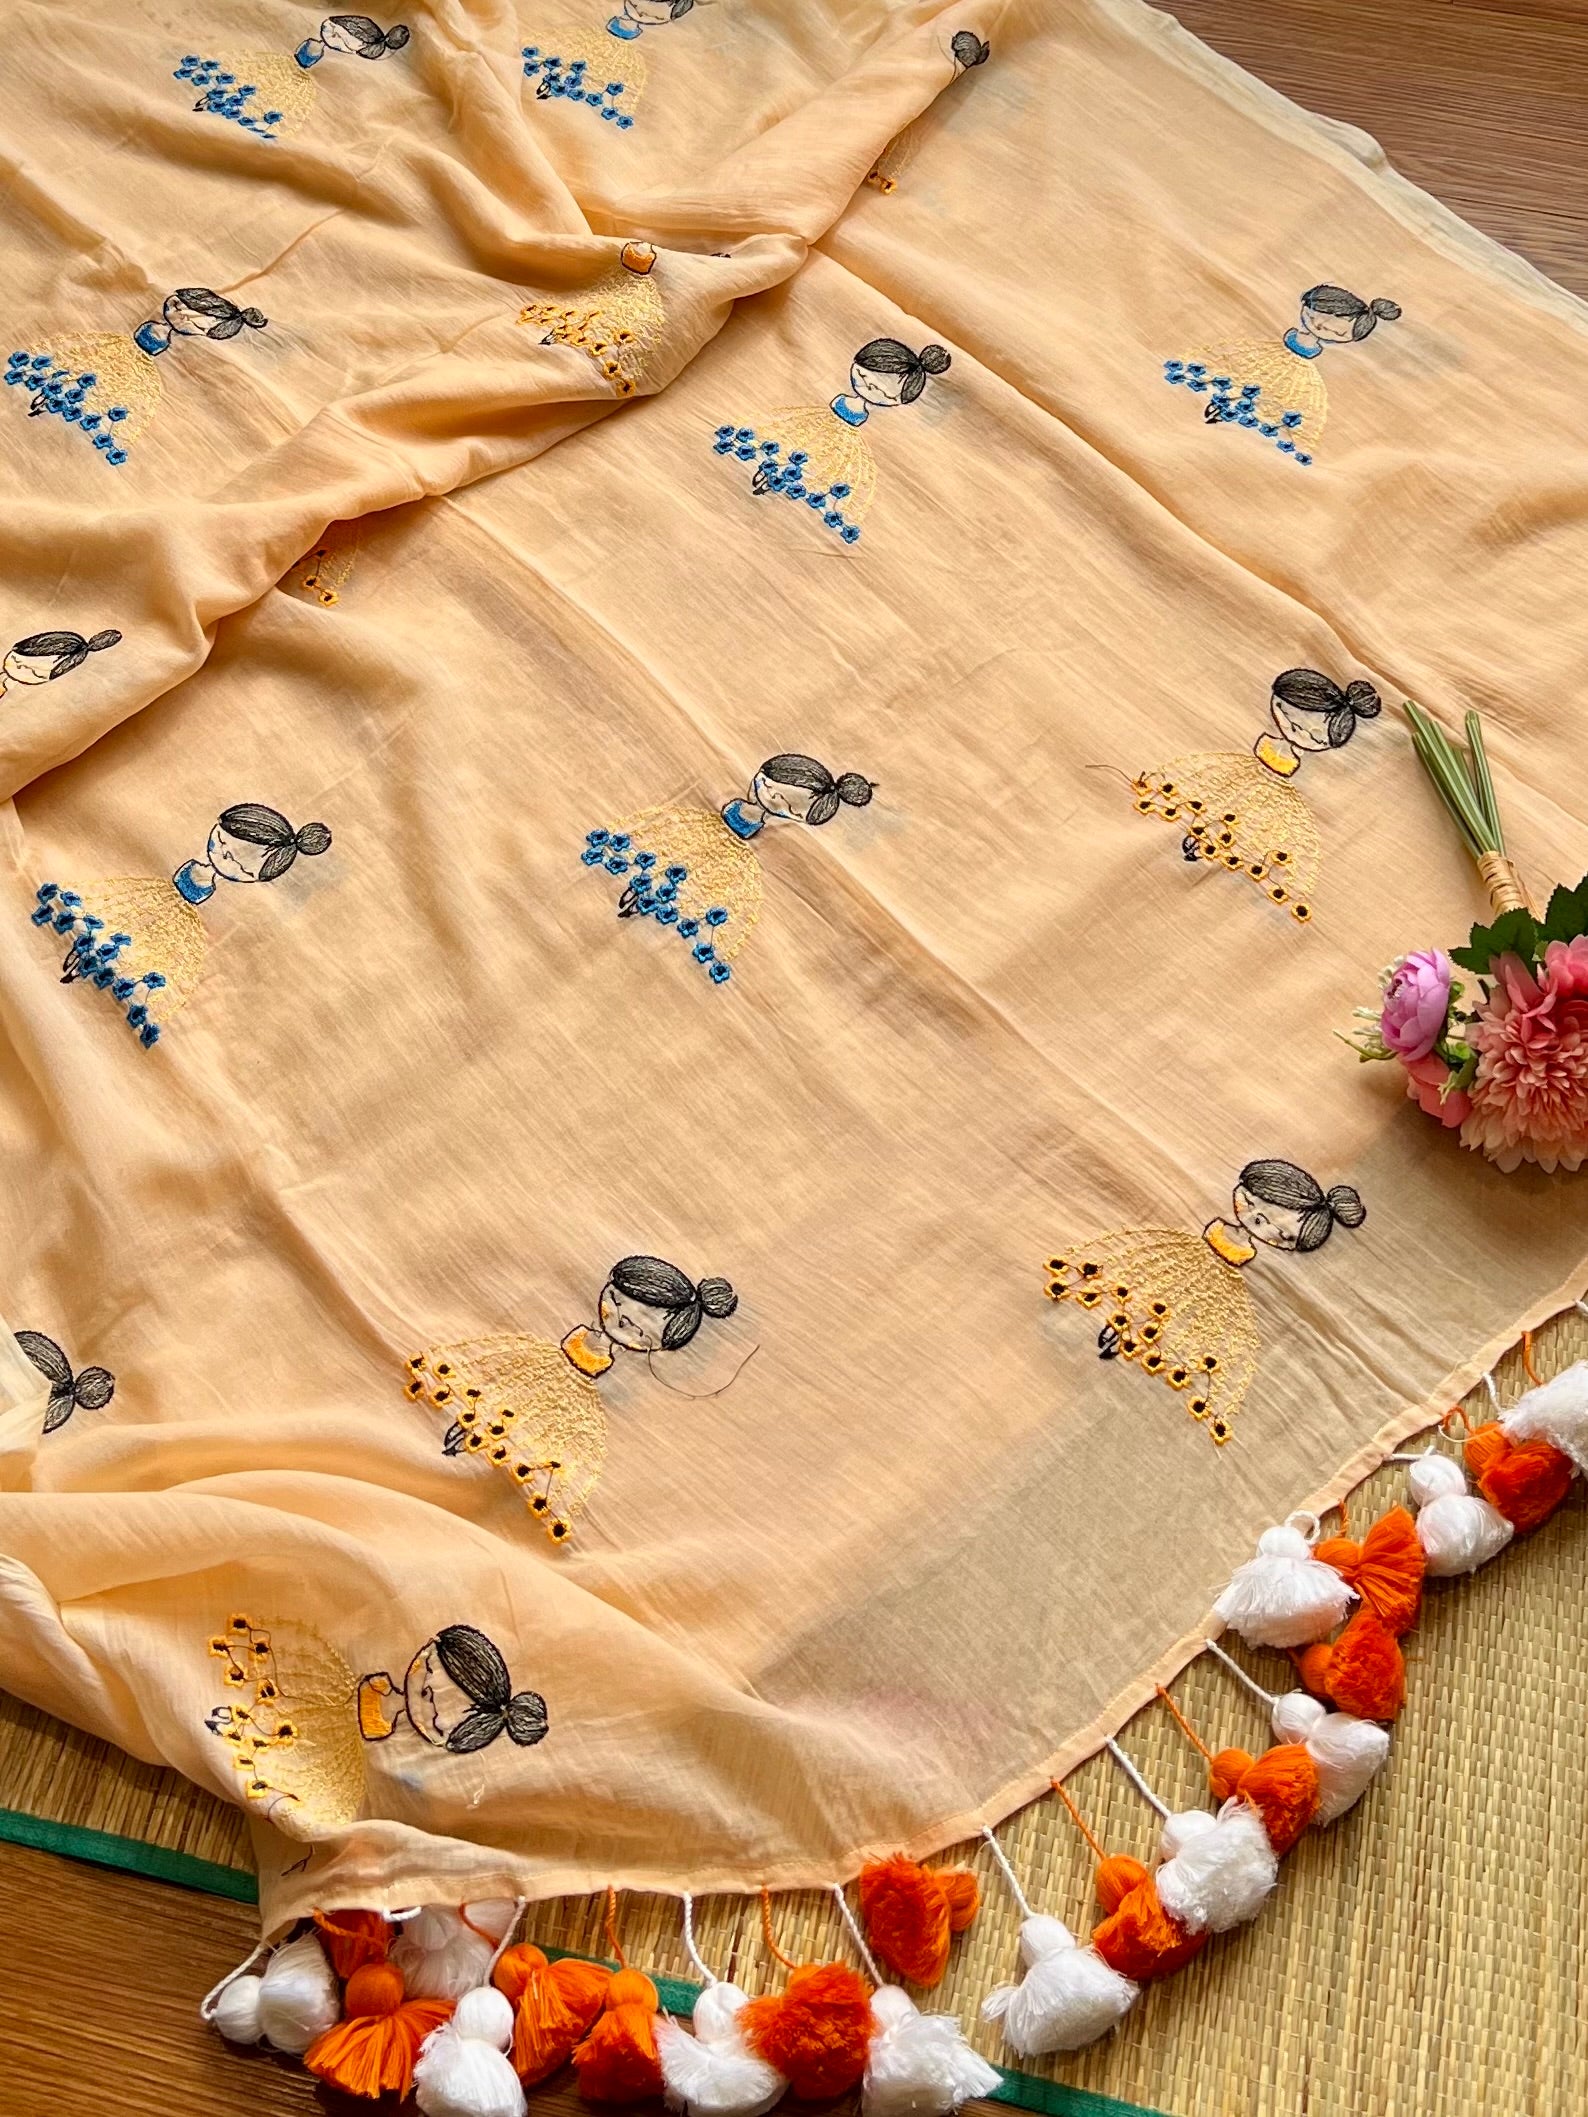 Kutty ponnu - Handloom Muslin Cotton Sare with embroidered kutty Ponnu